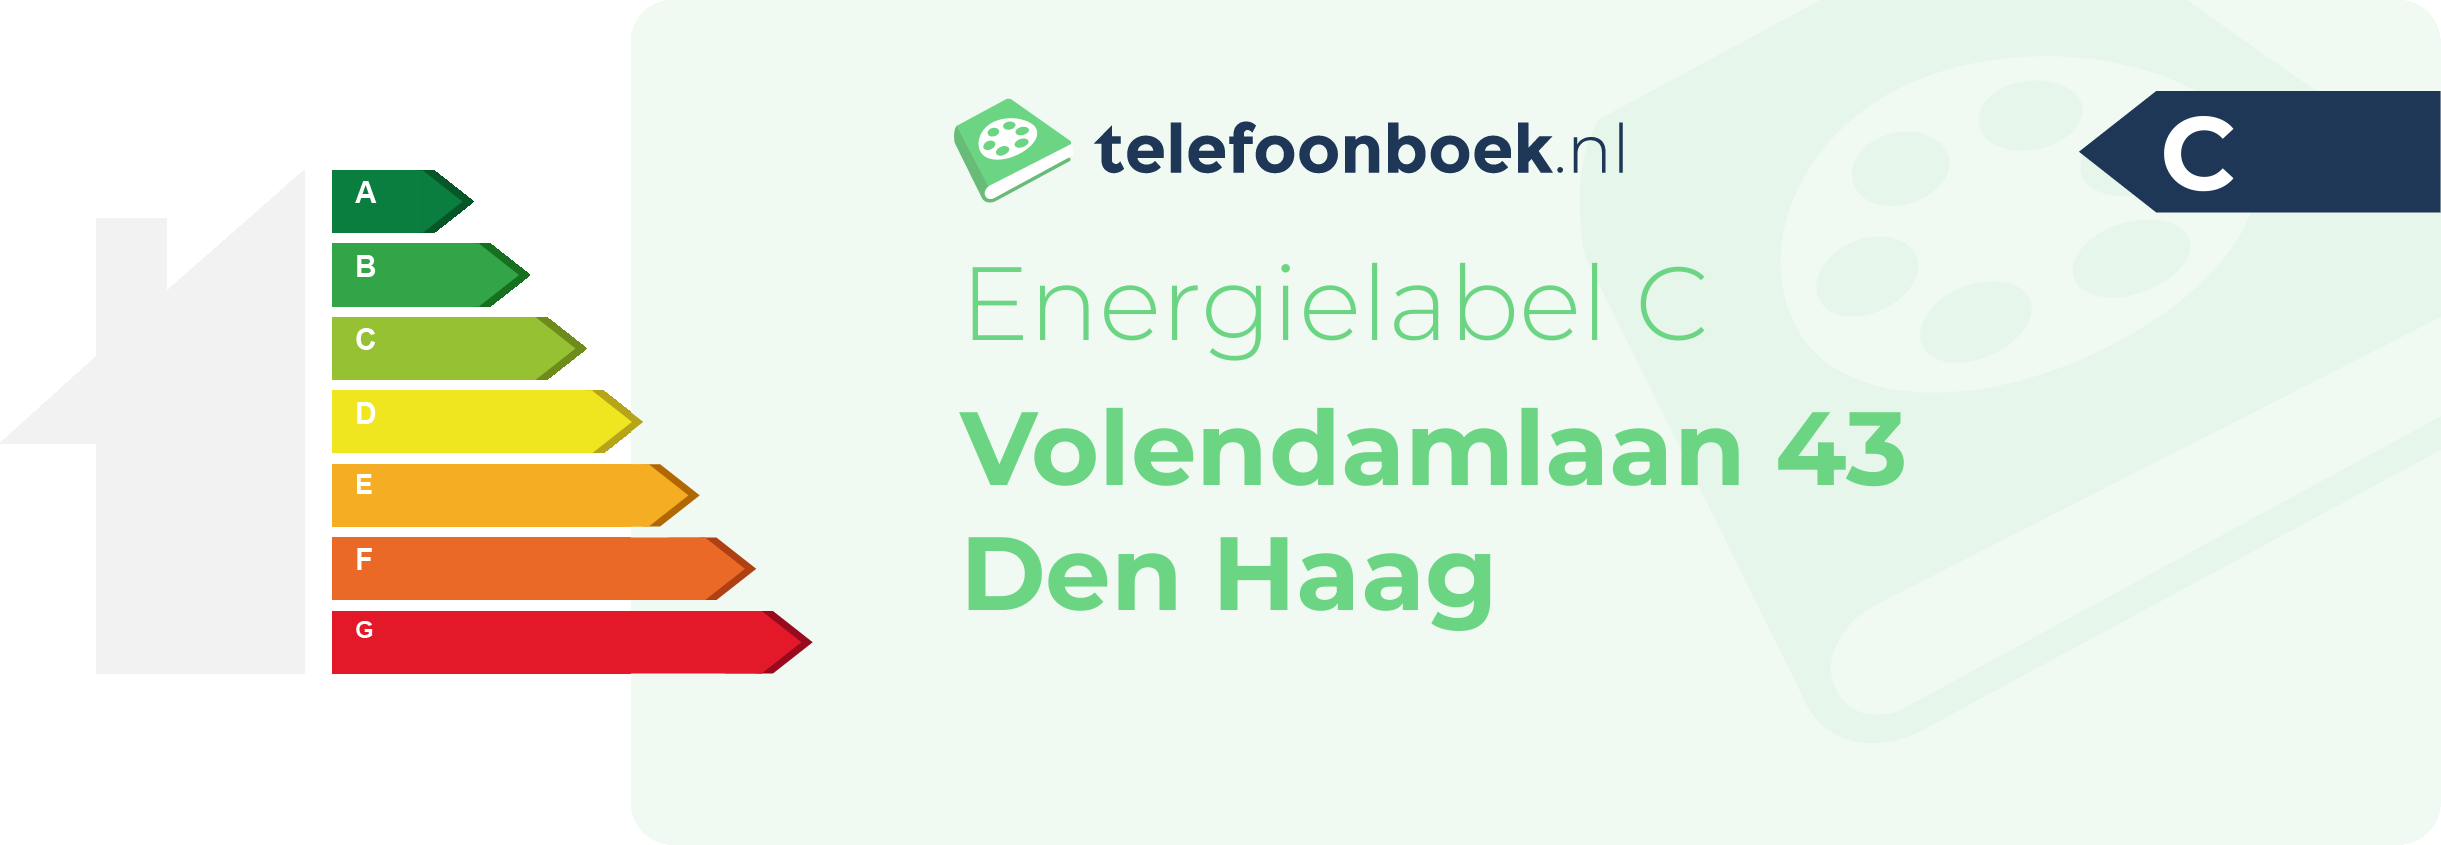 Energielabel Volendamlaan 43 Den Haag